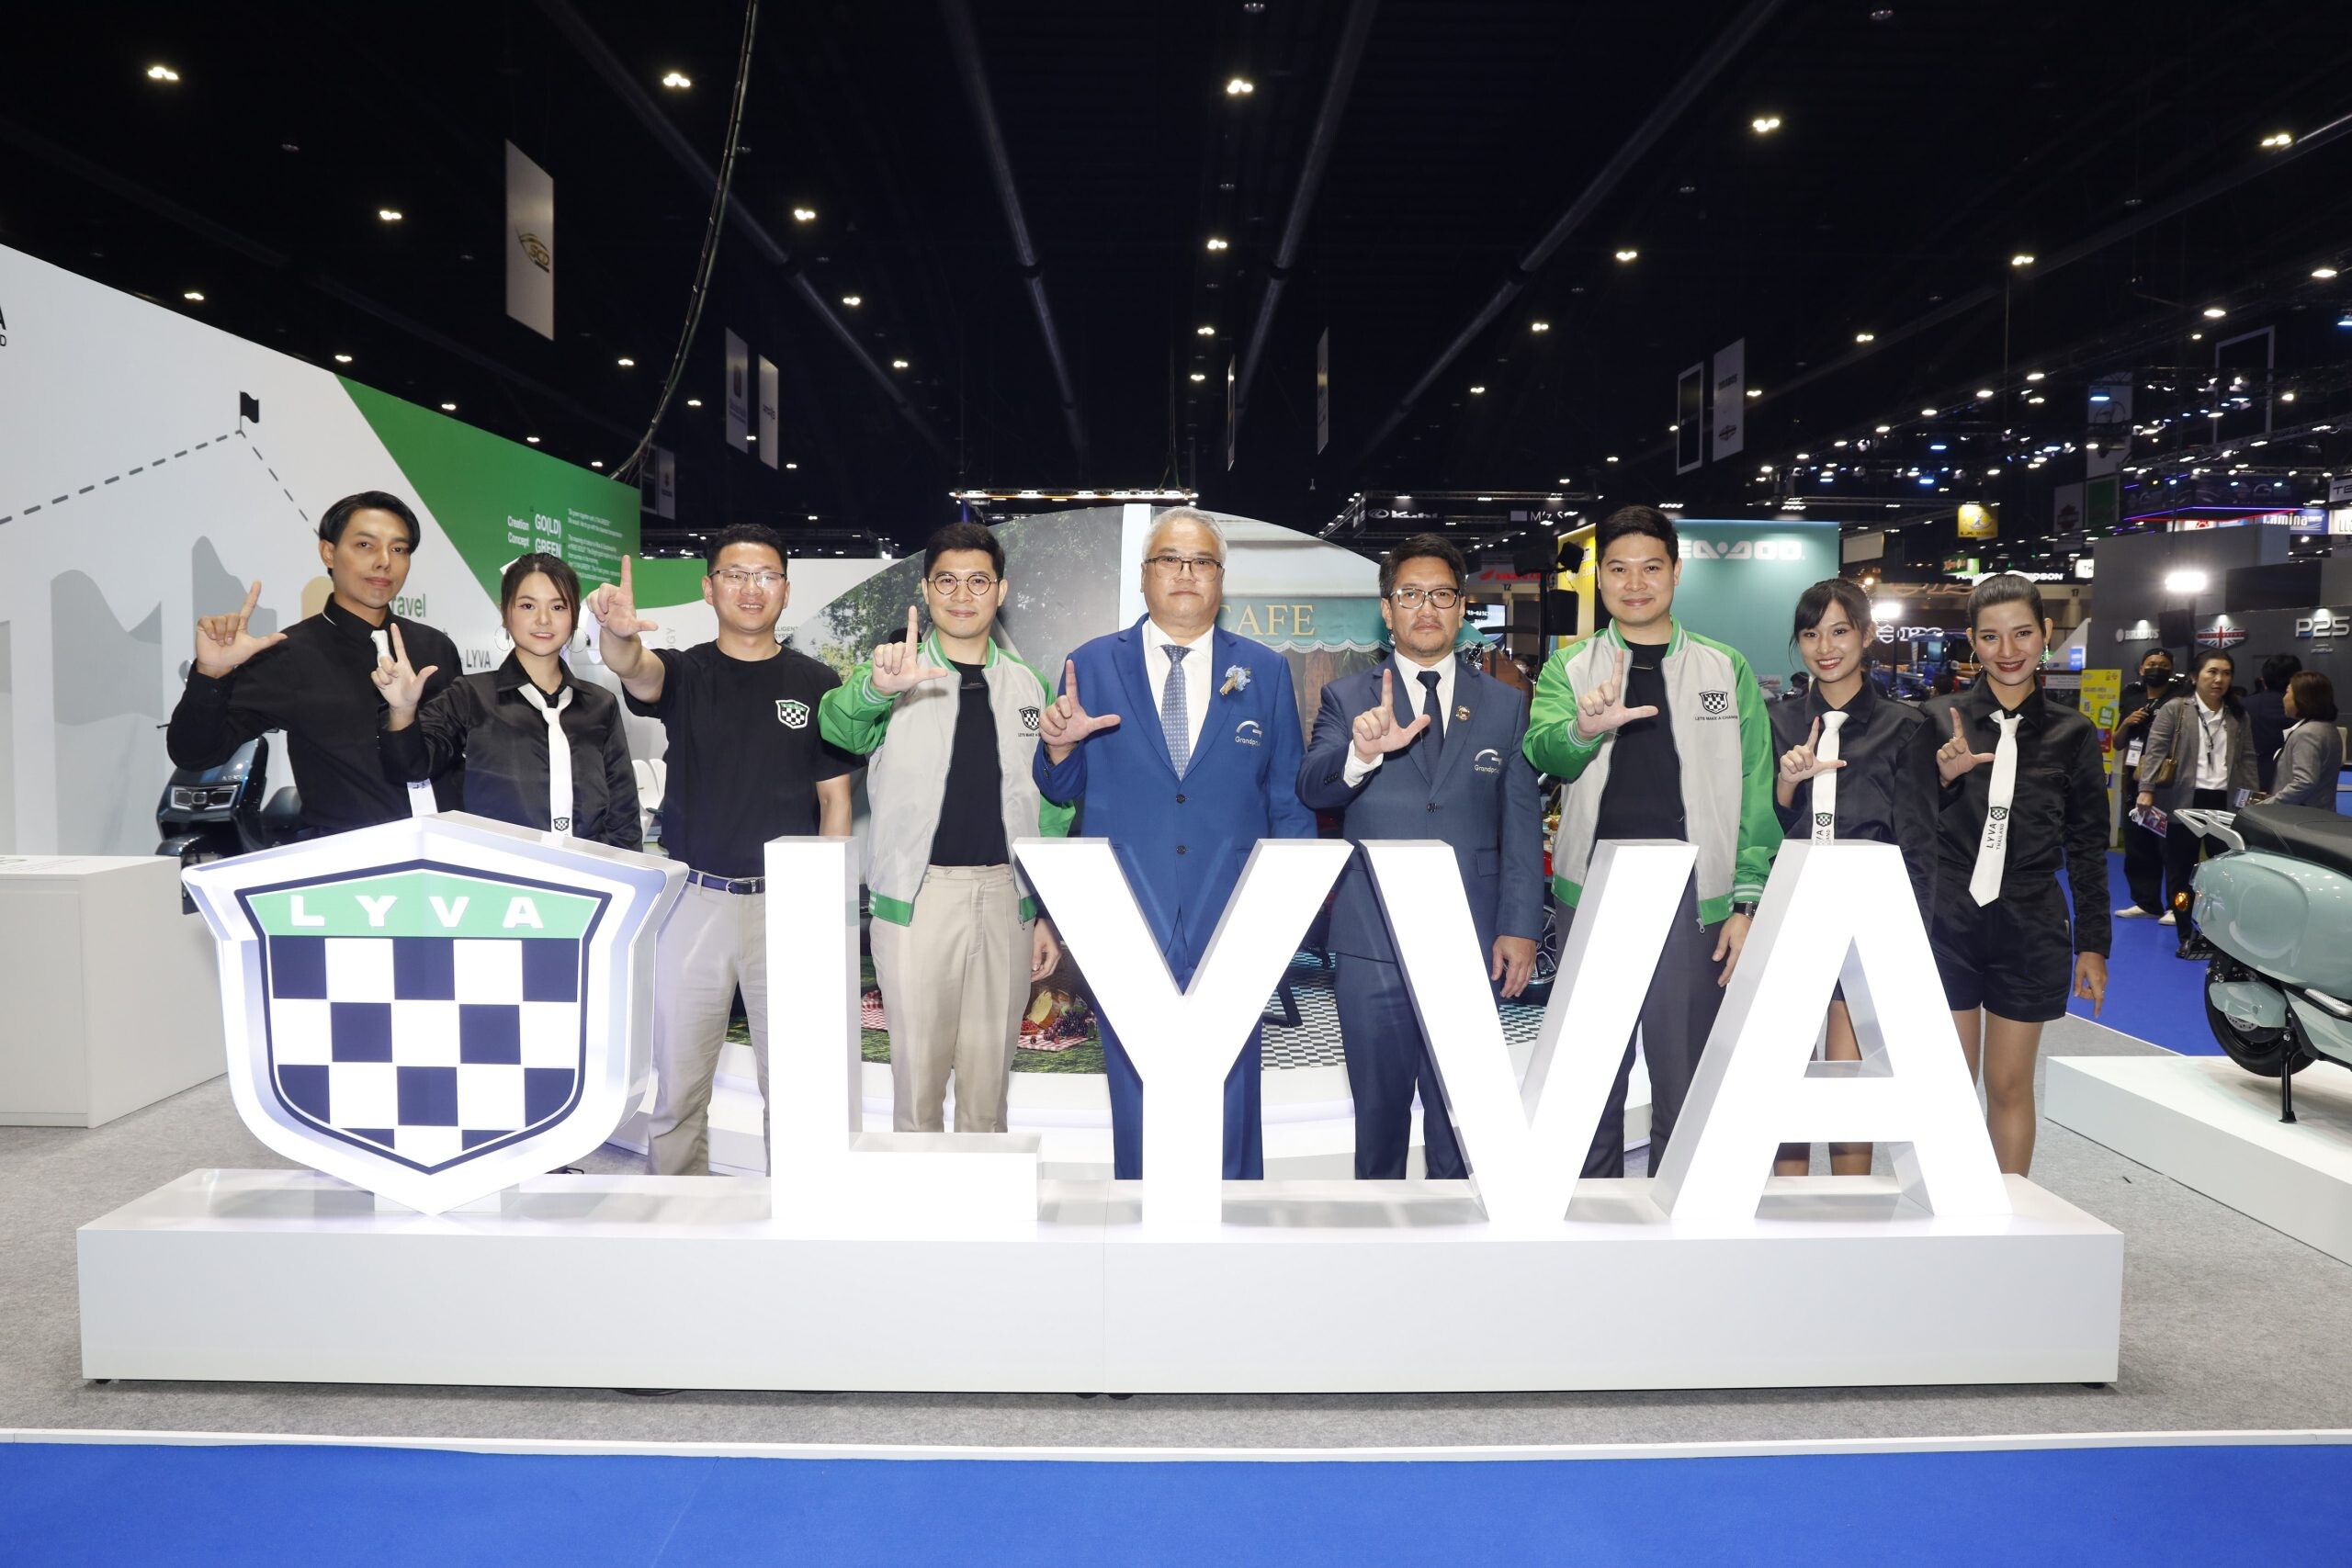 เพ็นทินั่ม อีเล็กทรอนิกส์ เผยโฉม "LYVA" รถมอเตอร์ไซค์ไฟฟ้าใหม่ 2 รุ่น ในงานมอเตอร์โชว์ 2023 ราคาสุดพิเศษ